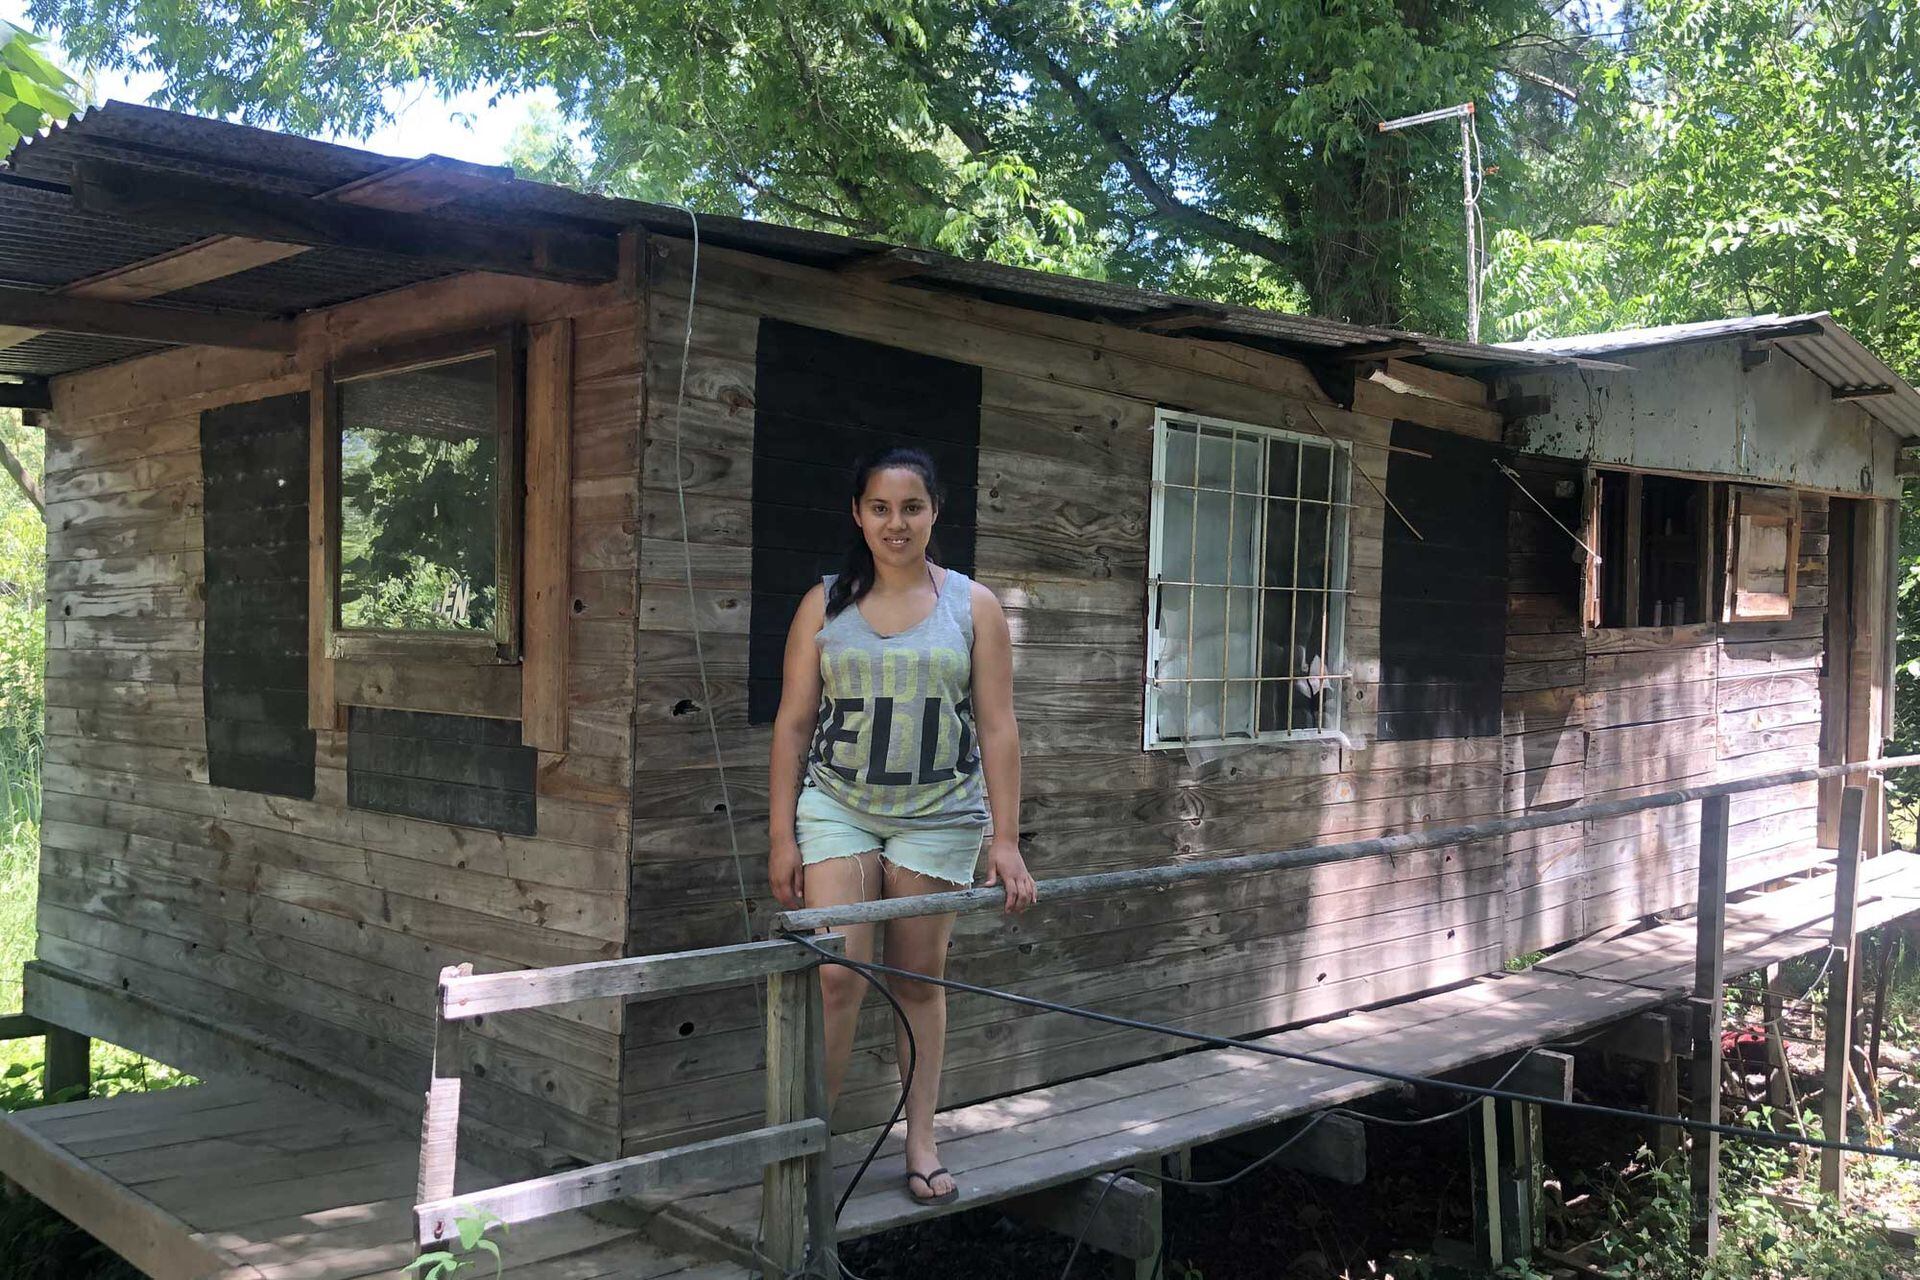 Iara vive en una casilla de madera y techos de chapa que está a medio construir; todavía les falta tener un baño, una cocina y una habitación para su hija